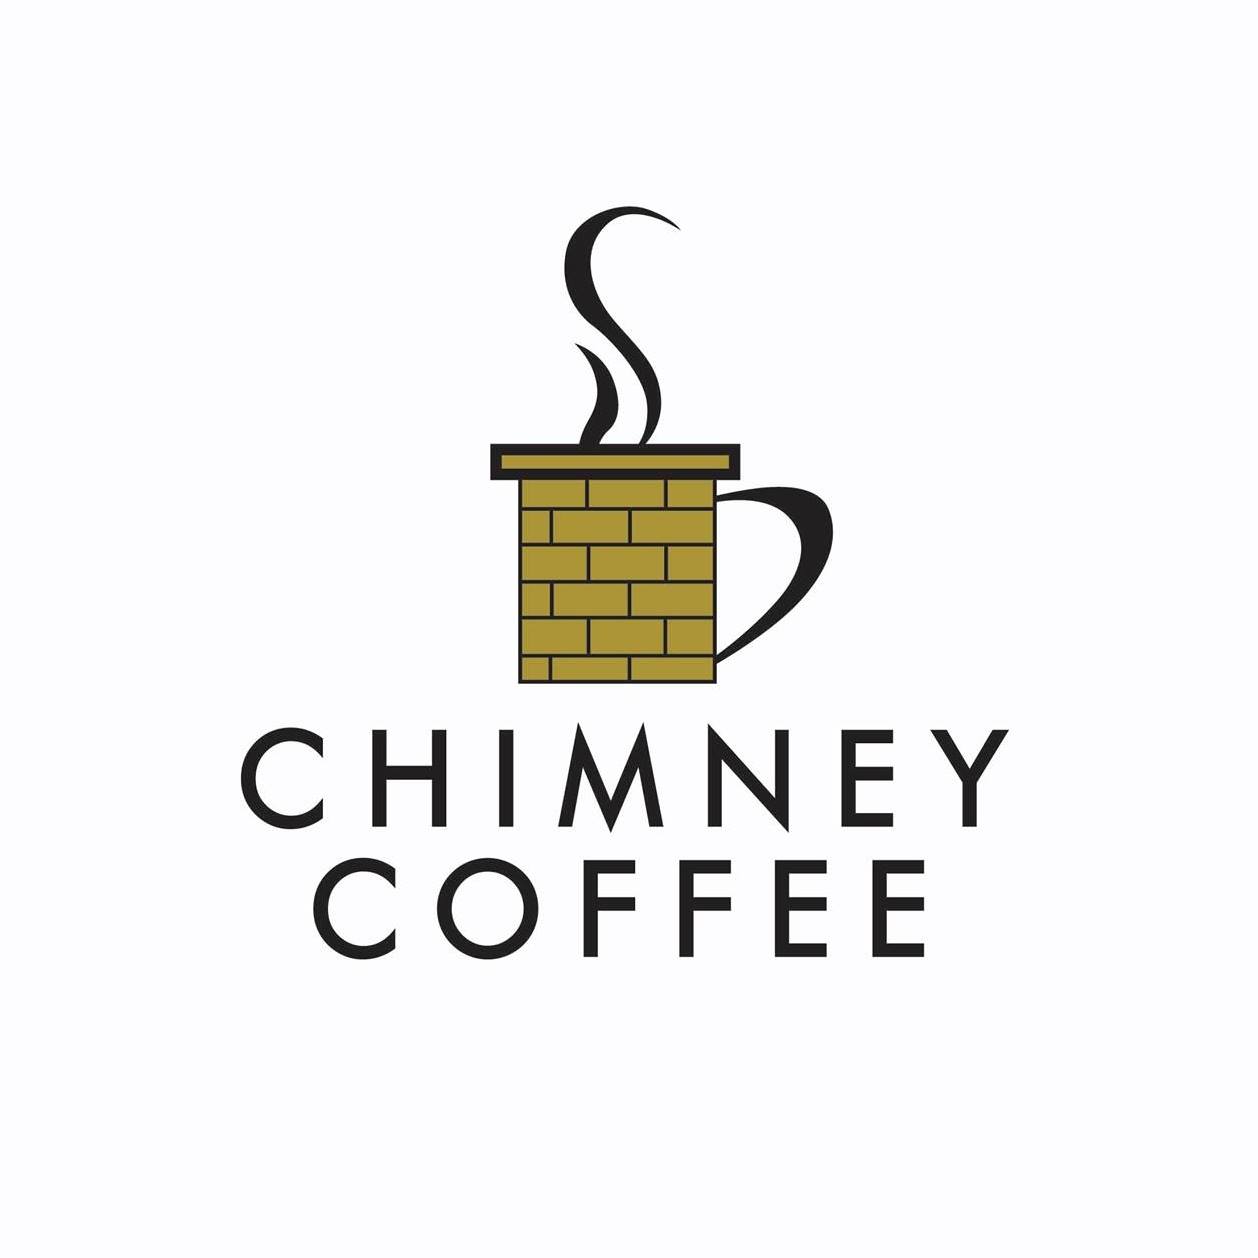 Chimney Coffee